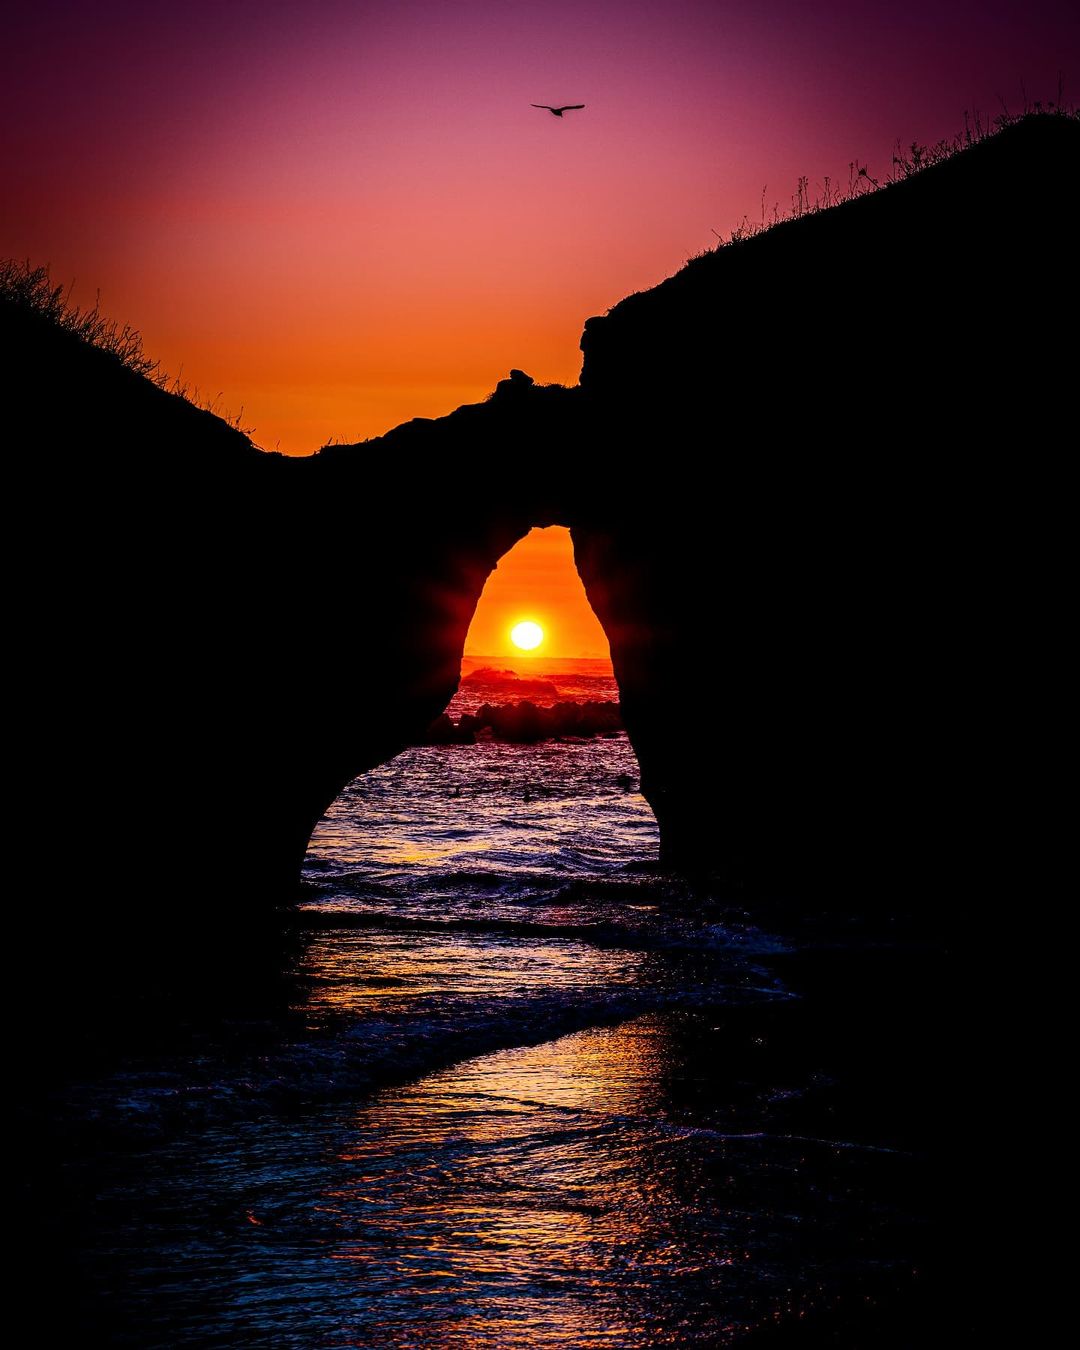 Sunset seen through ”The glasses rock” (Kushiro)